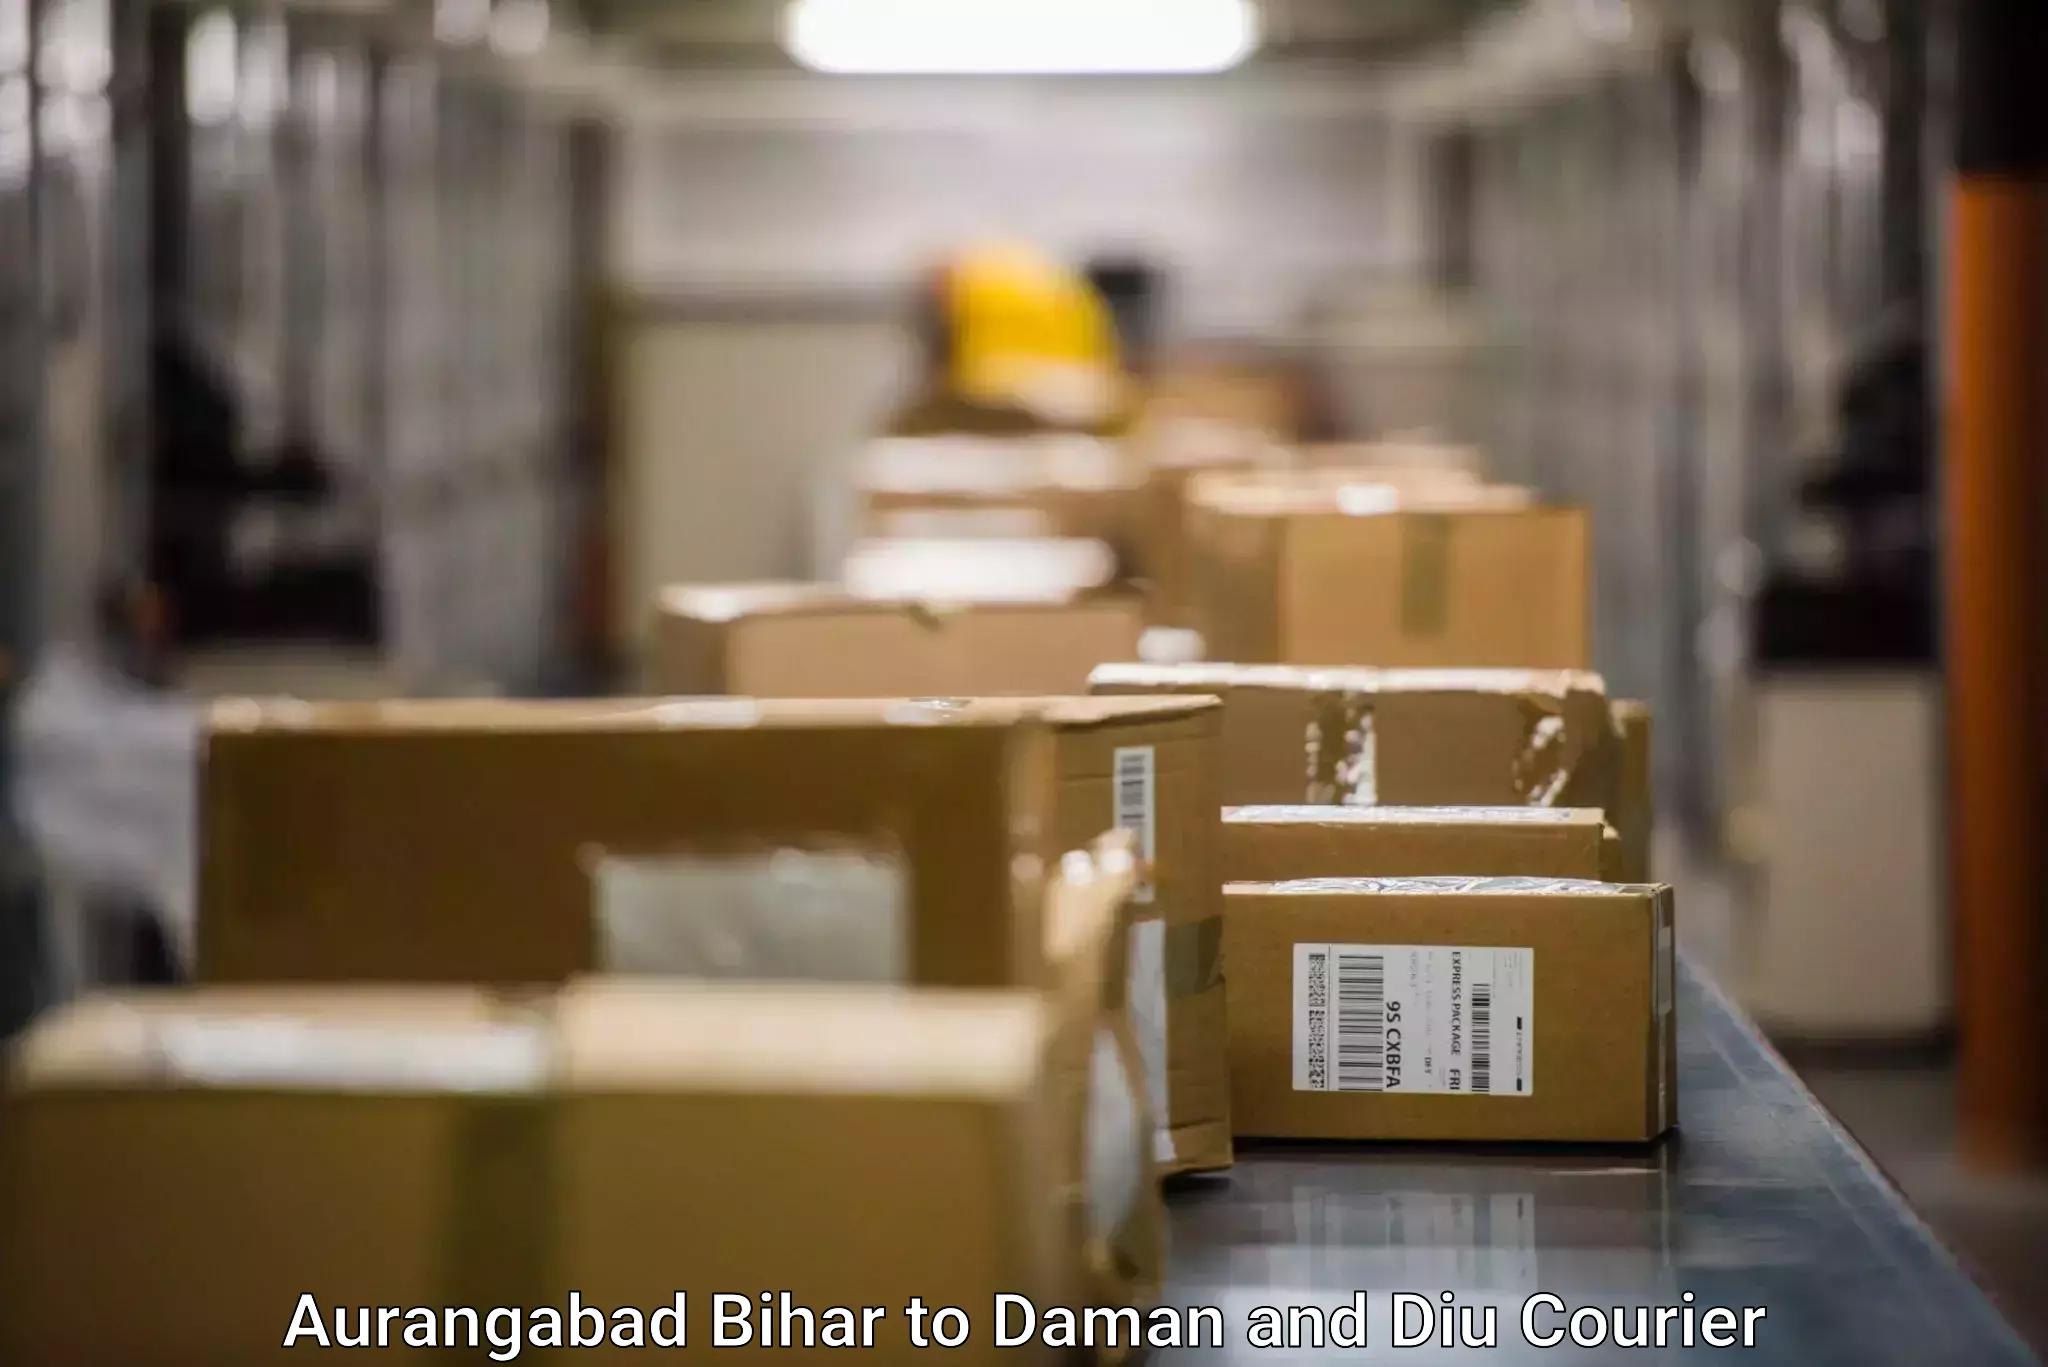 Efficient shipping platforms Aurangabad Bihar to Diu